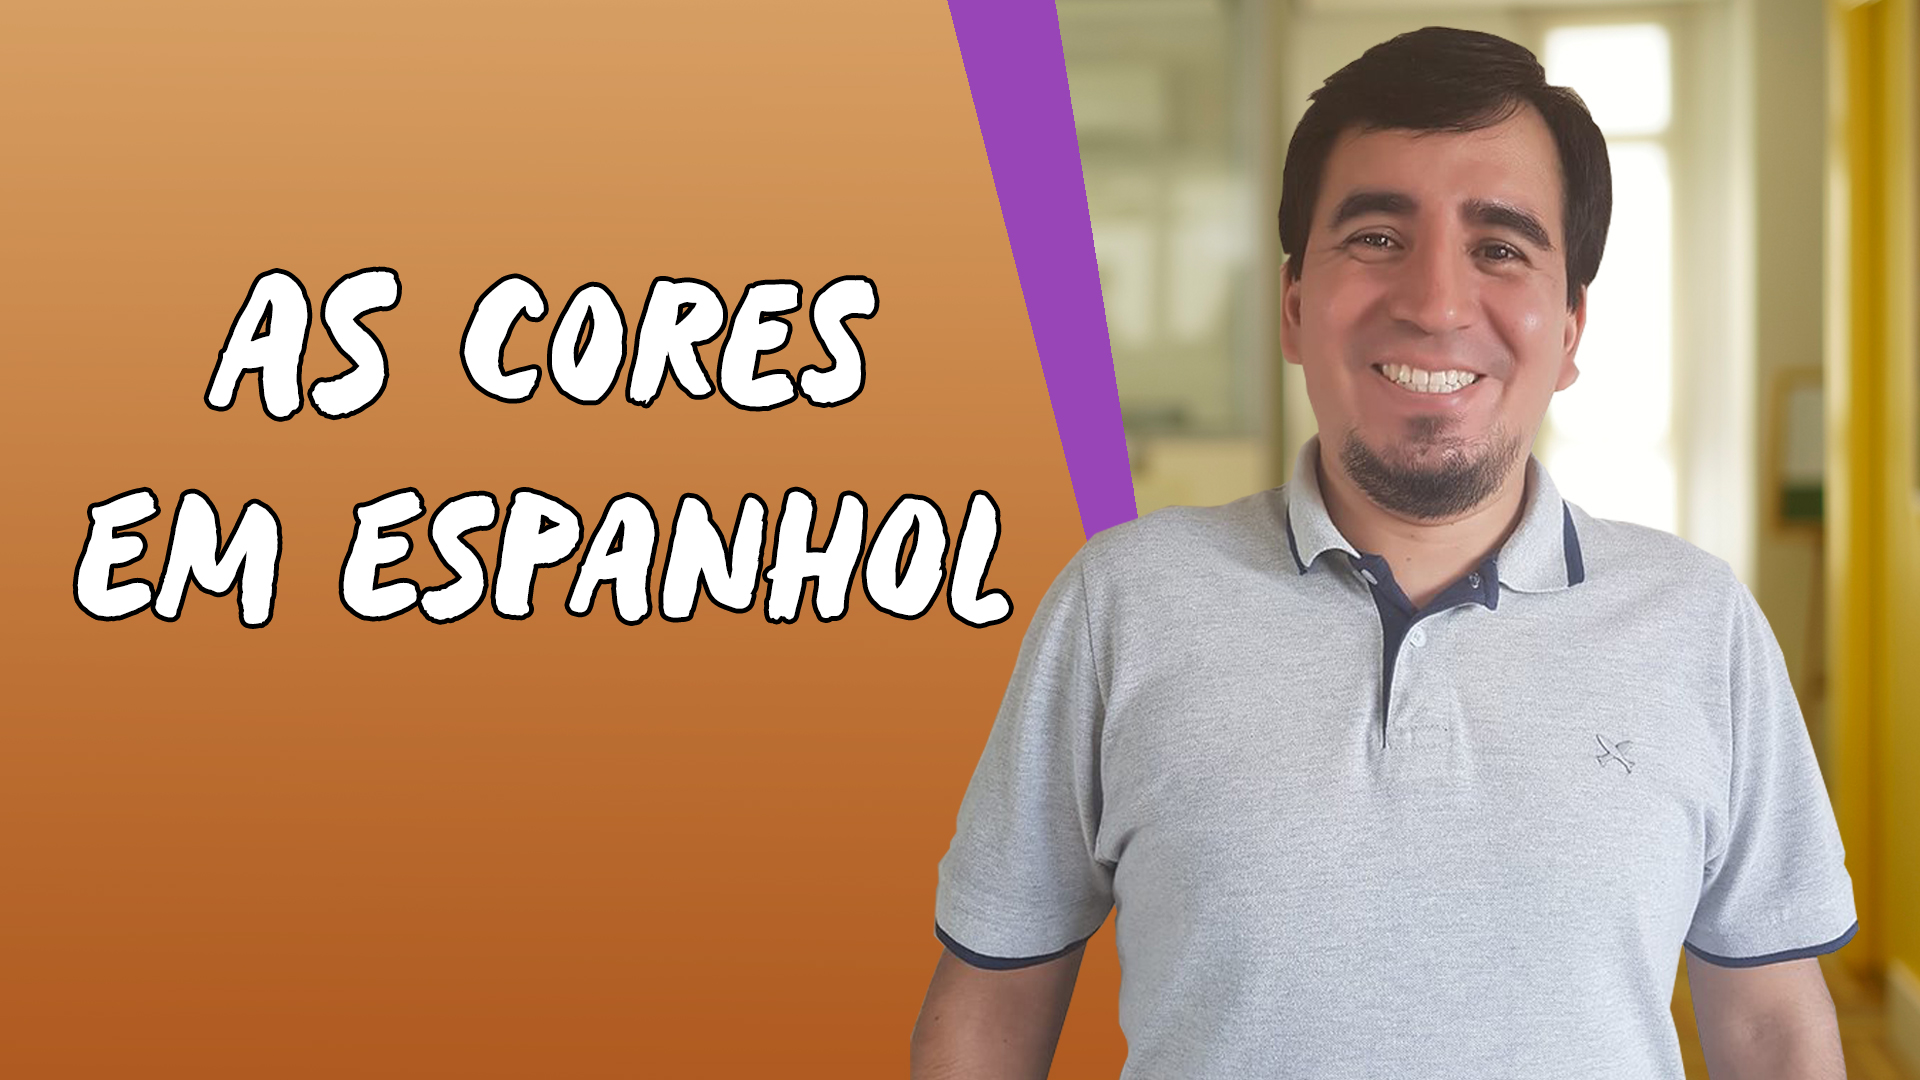 "As Cores em Espanhol" escrito sobre fundo laranja ao lado da imagem do professor